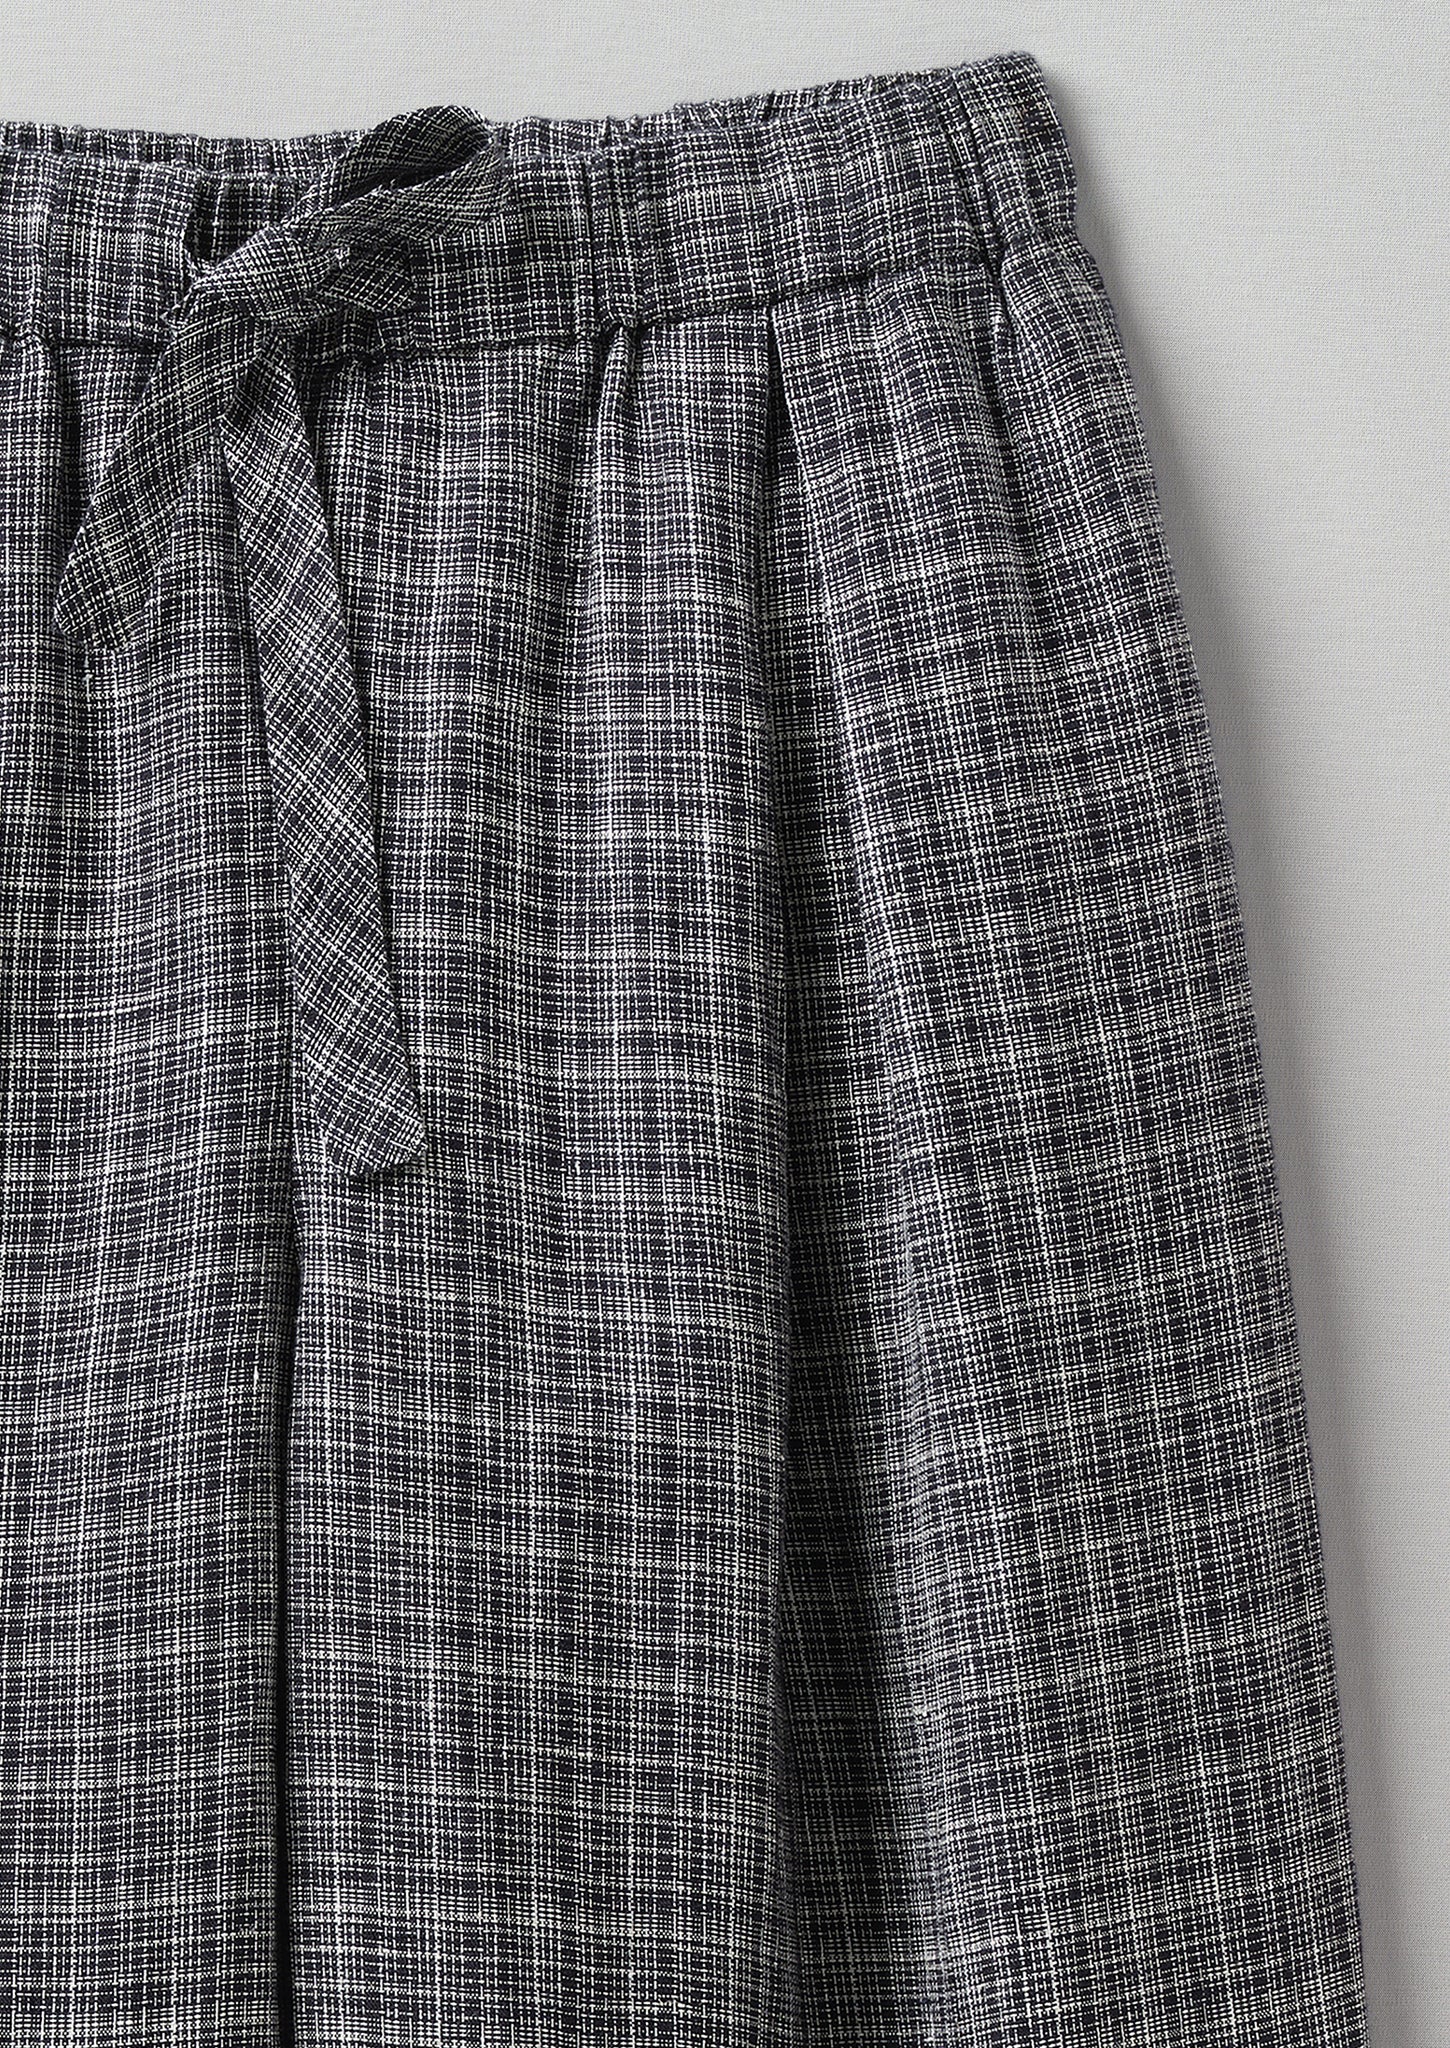 Minako Asawa Check Linen Trousers | Charcoal